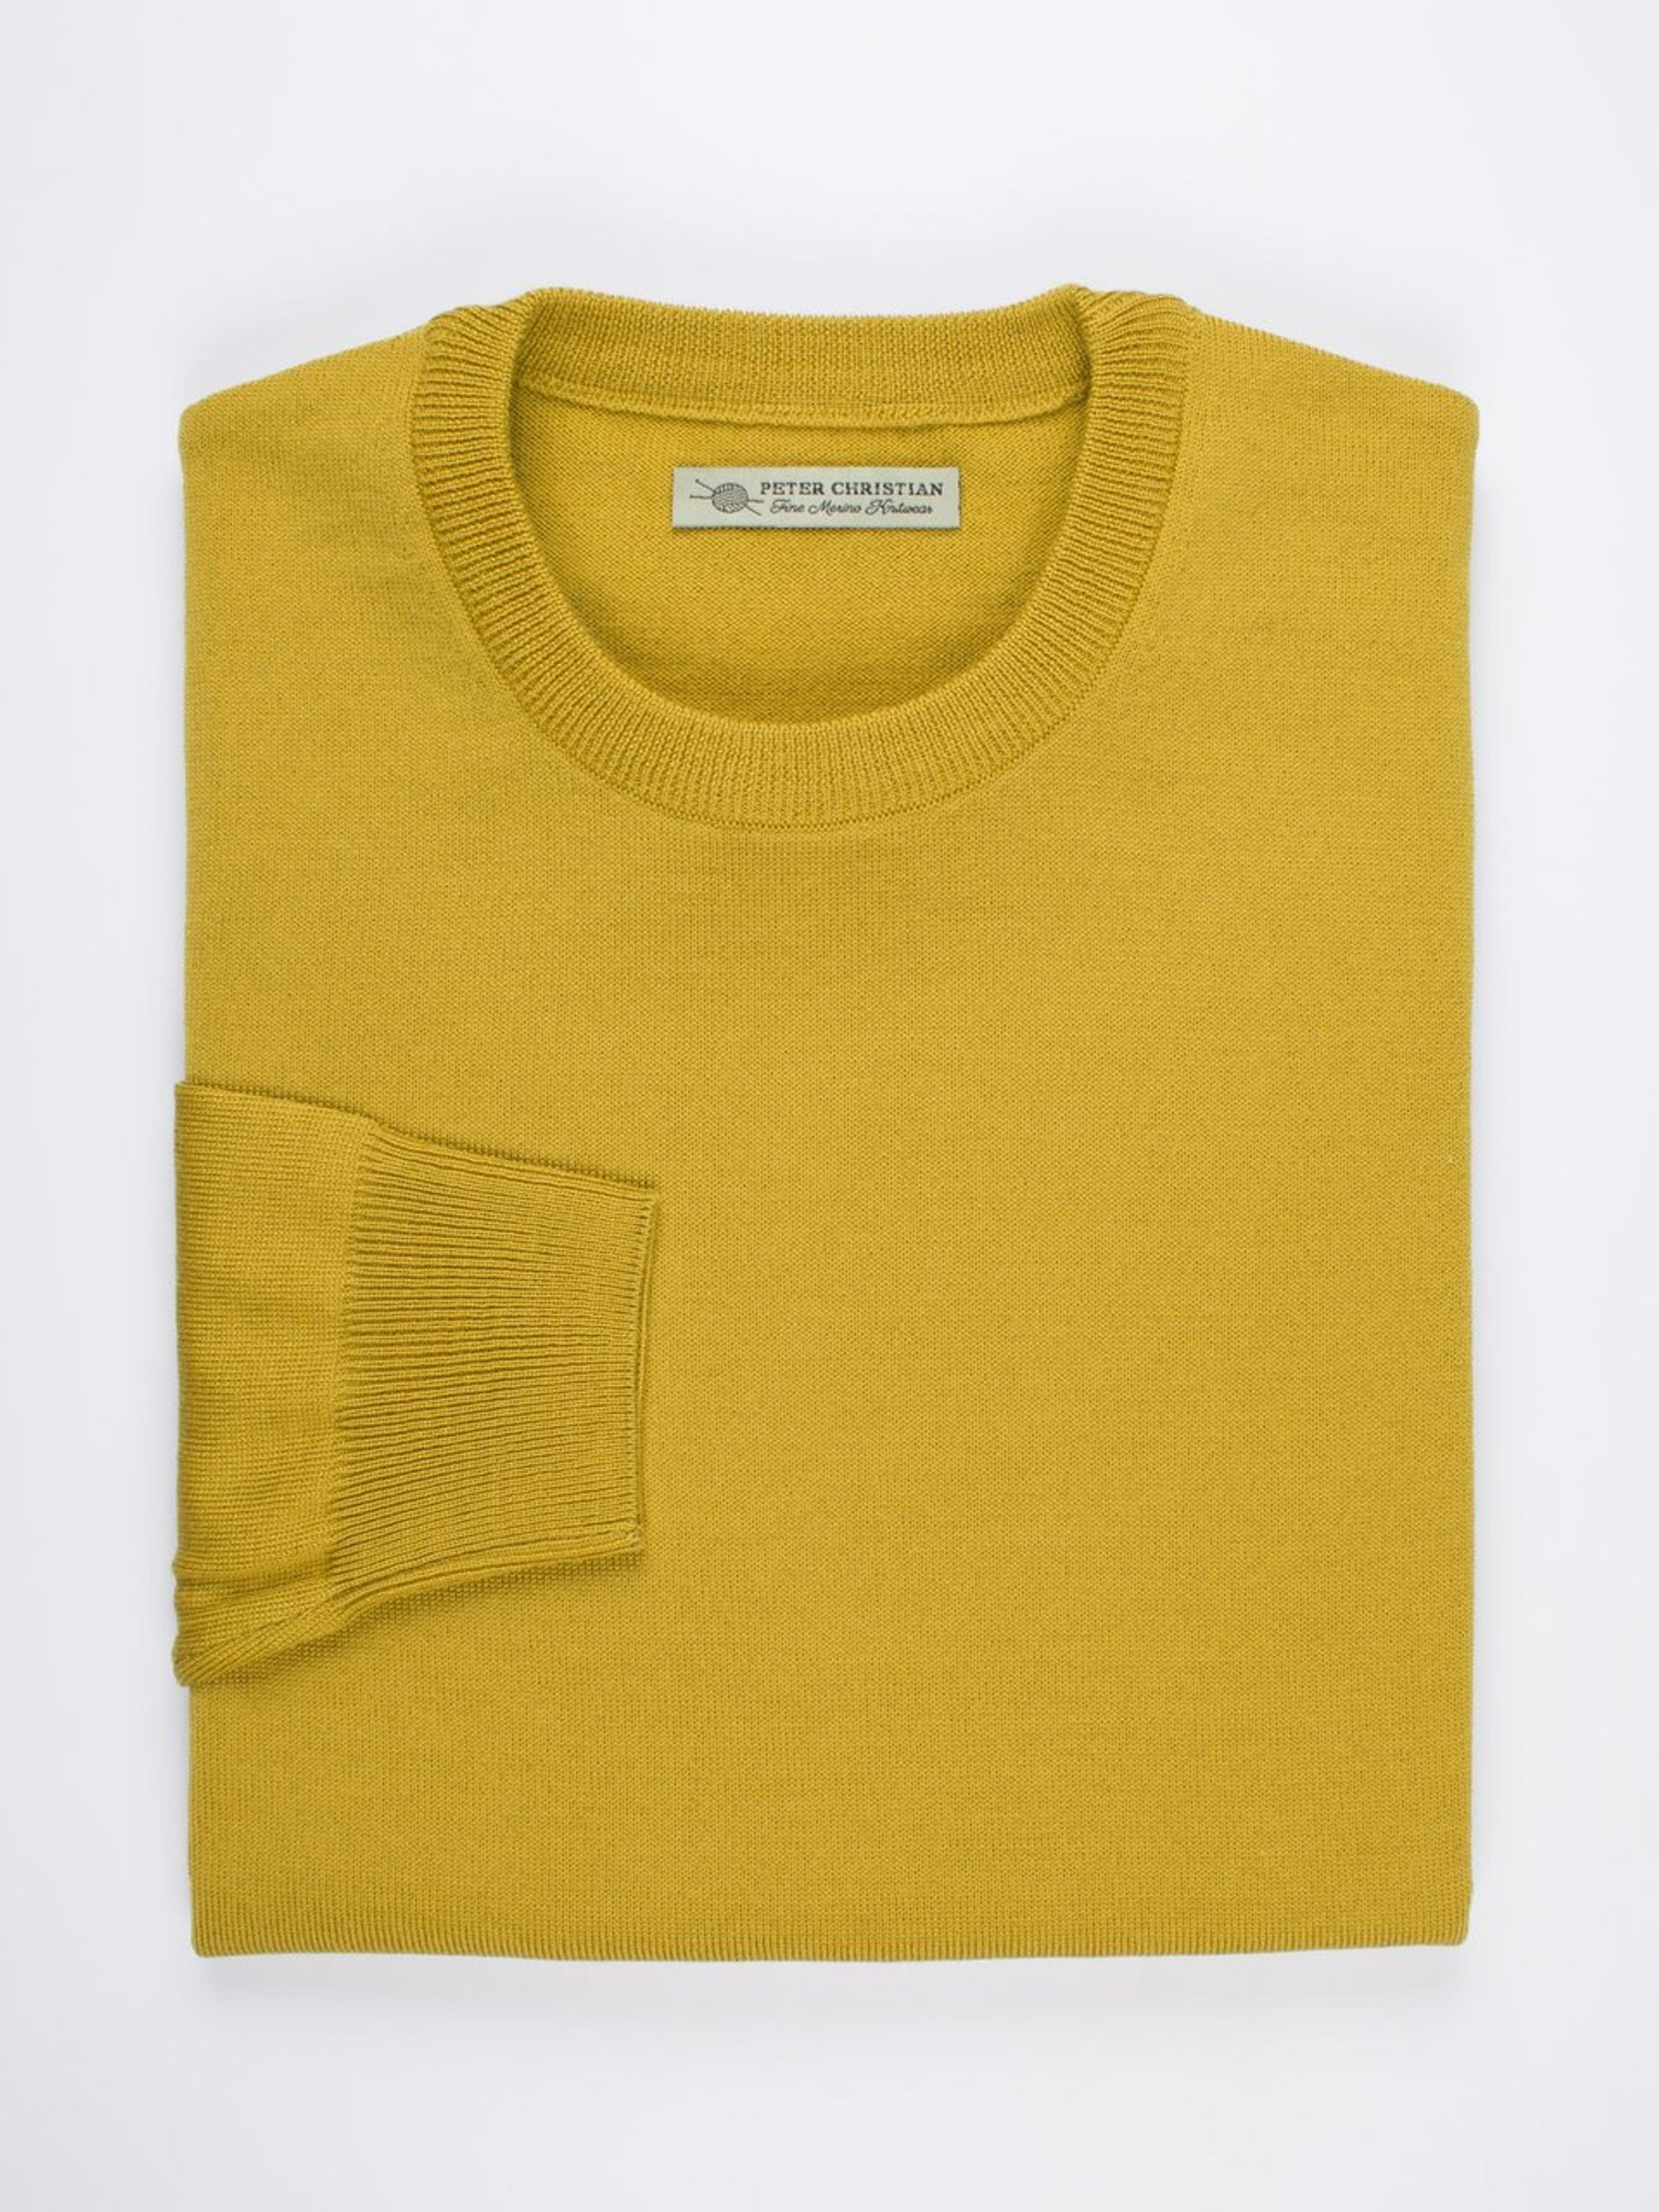 Gold Yellow Merino Crew Neck Sweater | Peter Christian